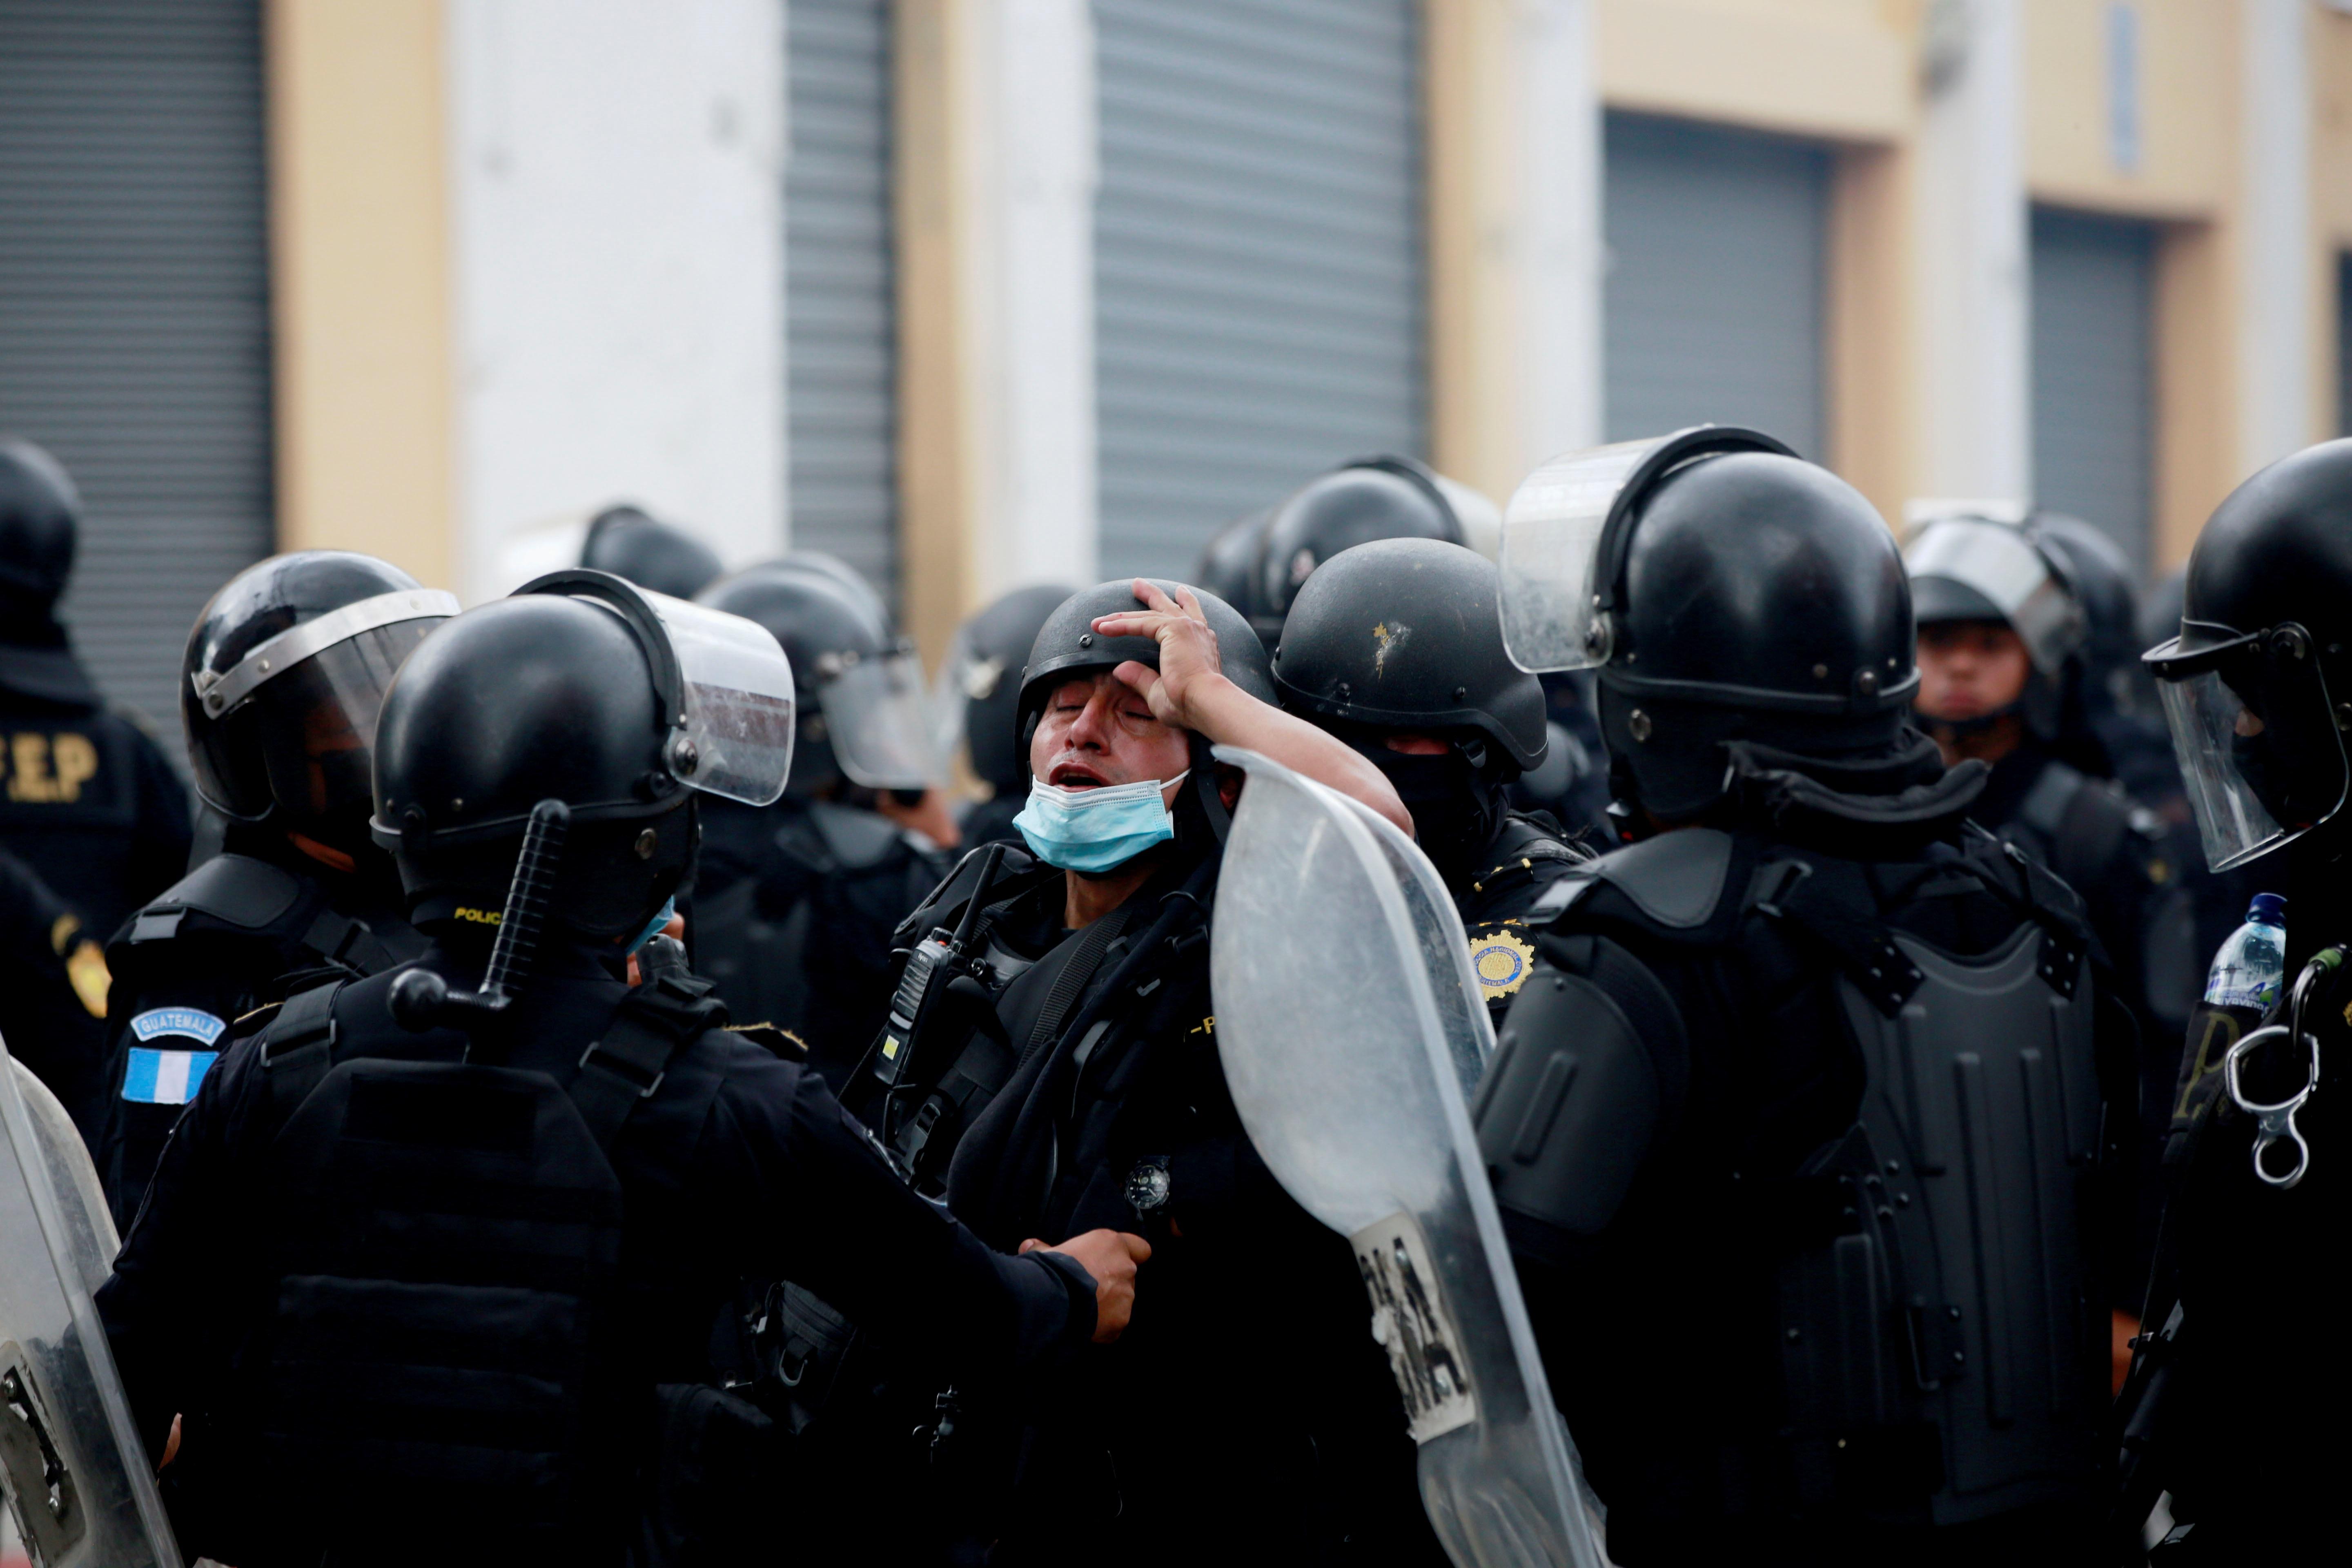 Un agente de la policía afectado por gases lacrimógenos es atendido durante las protestas en contra del Gobierno del presidente Alejandro Giammattei el pasado 21 de noviembre. (Foto Prensa Libre: EFE)